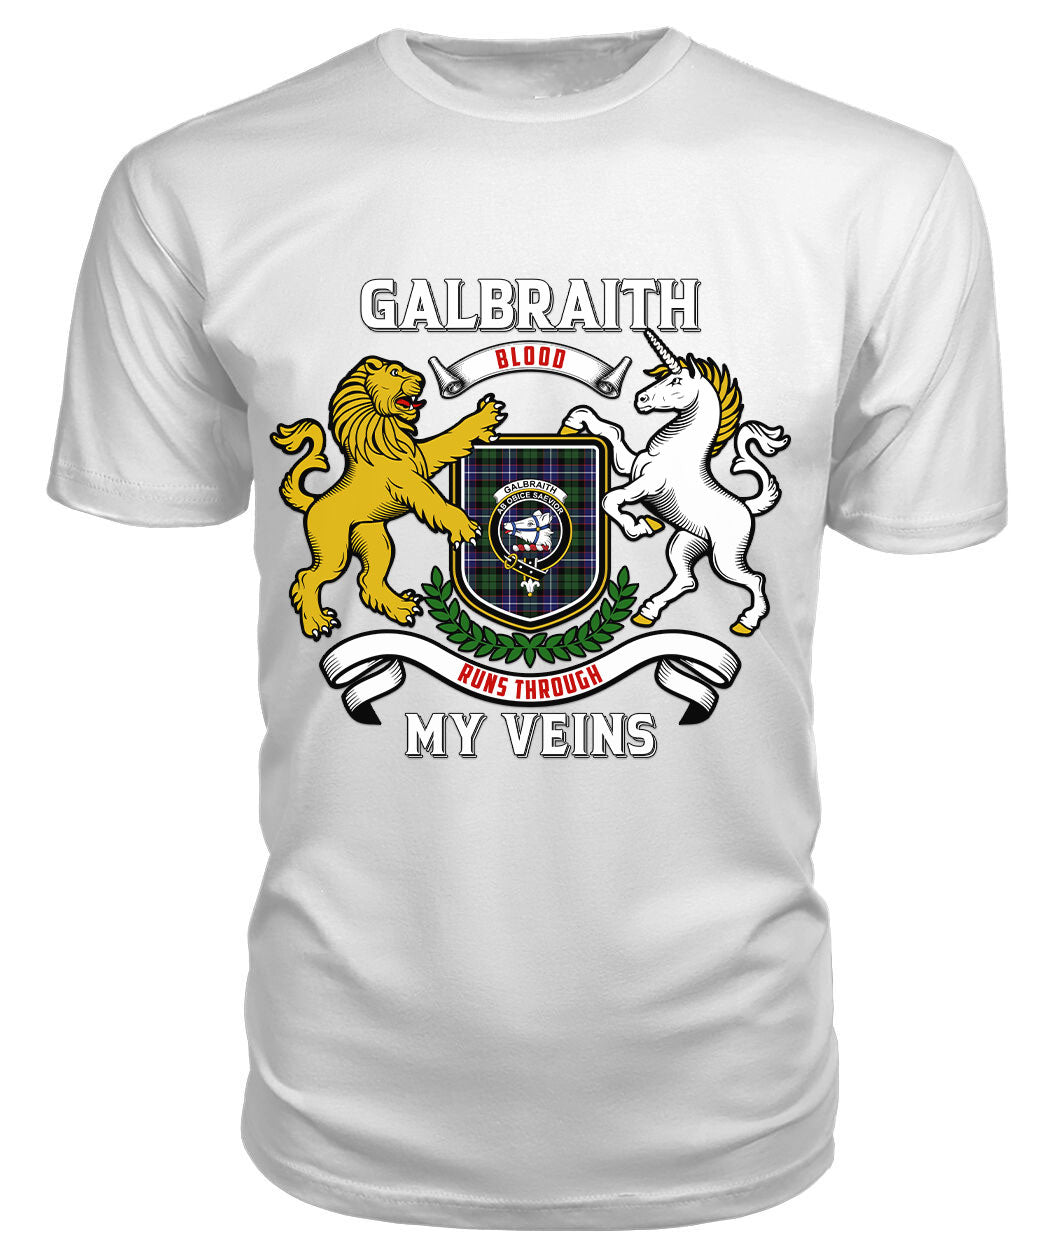 Galbraith Modern Tartan Crest 2D T-shirt - Blood Runs Through My Veins Style